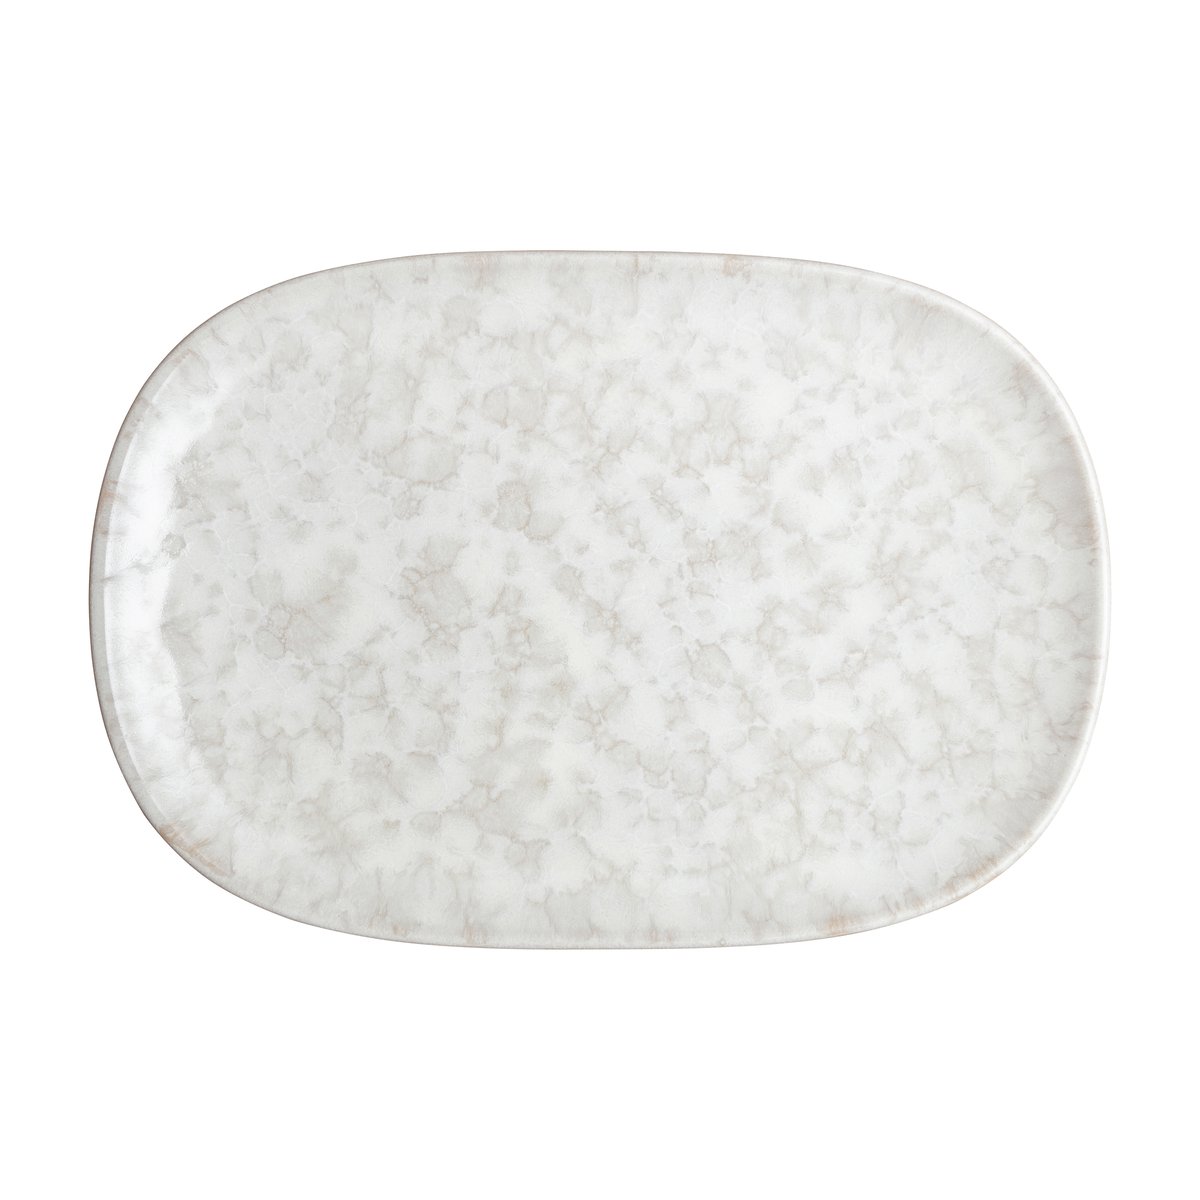 denby assiette modus marble 17,5x26 cm blanc